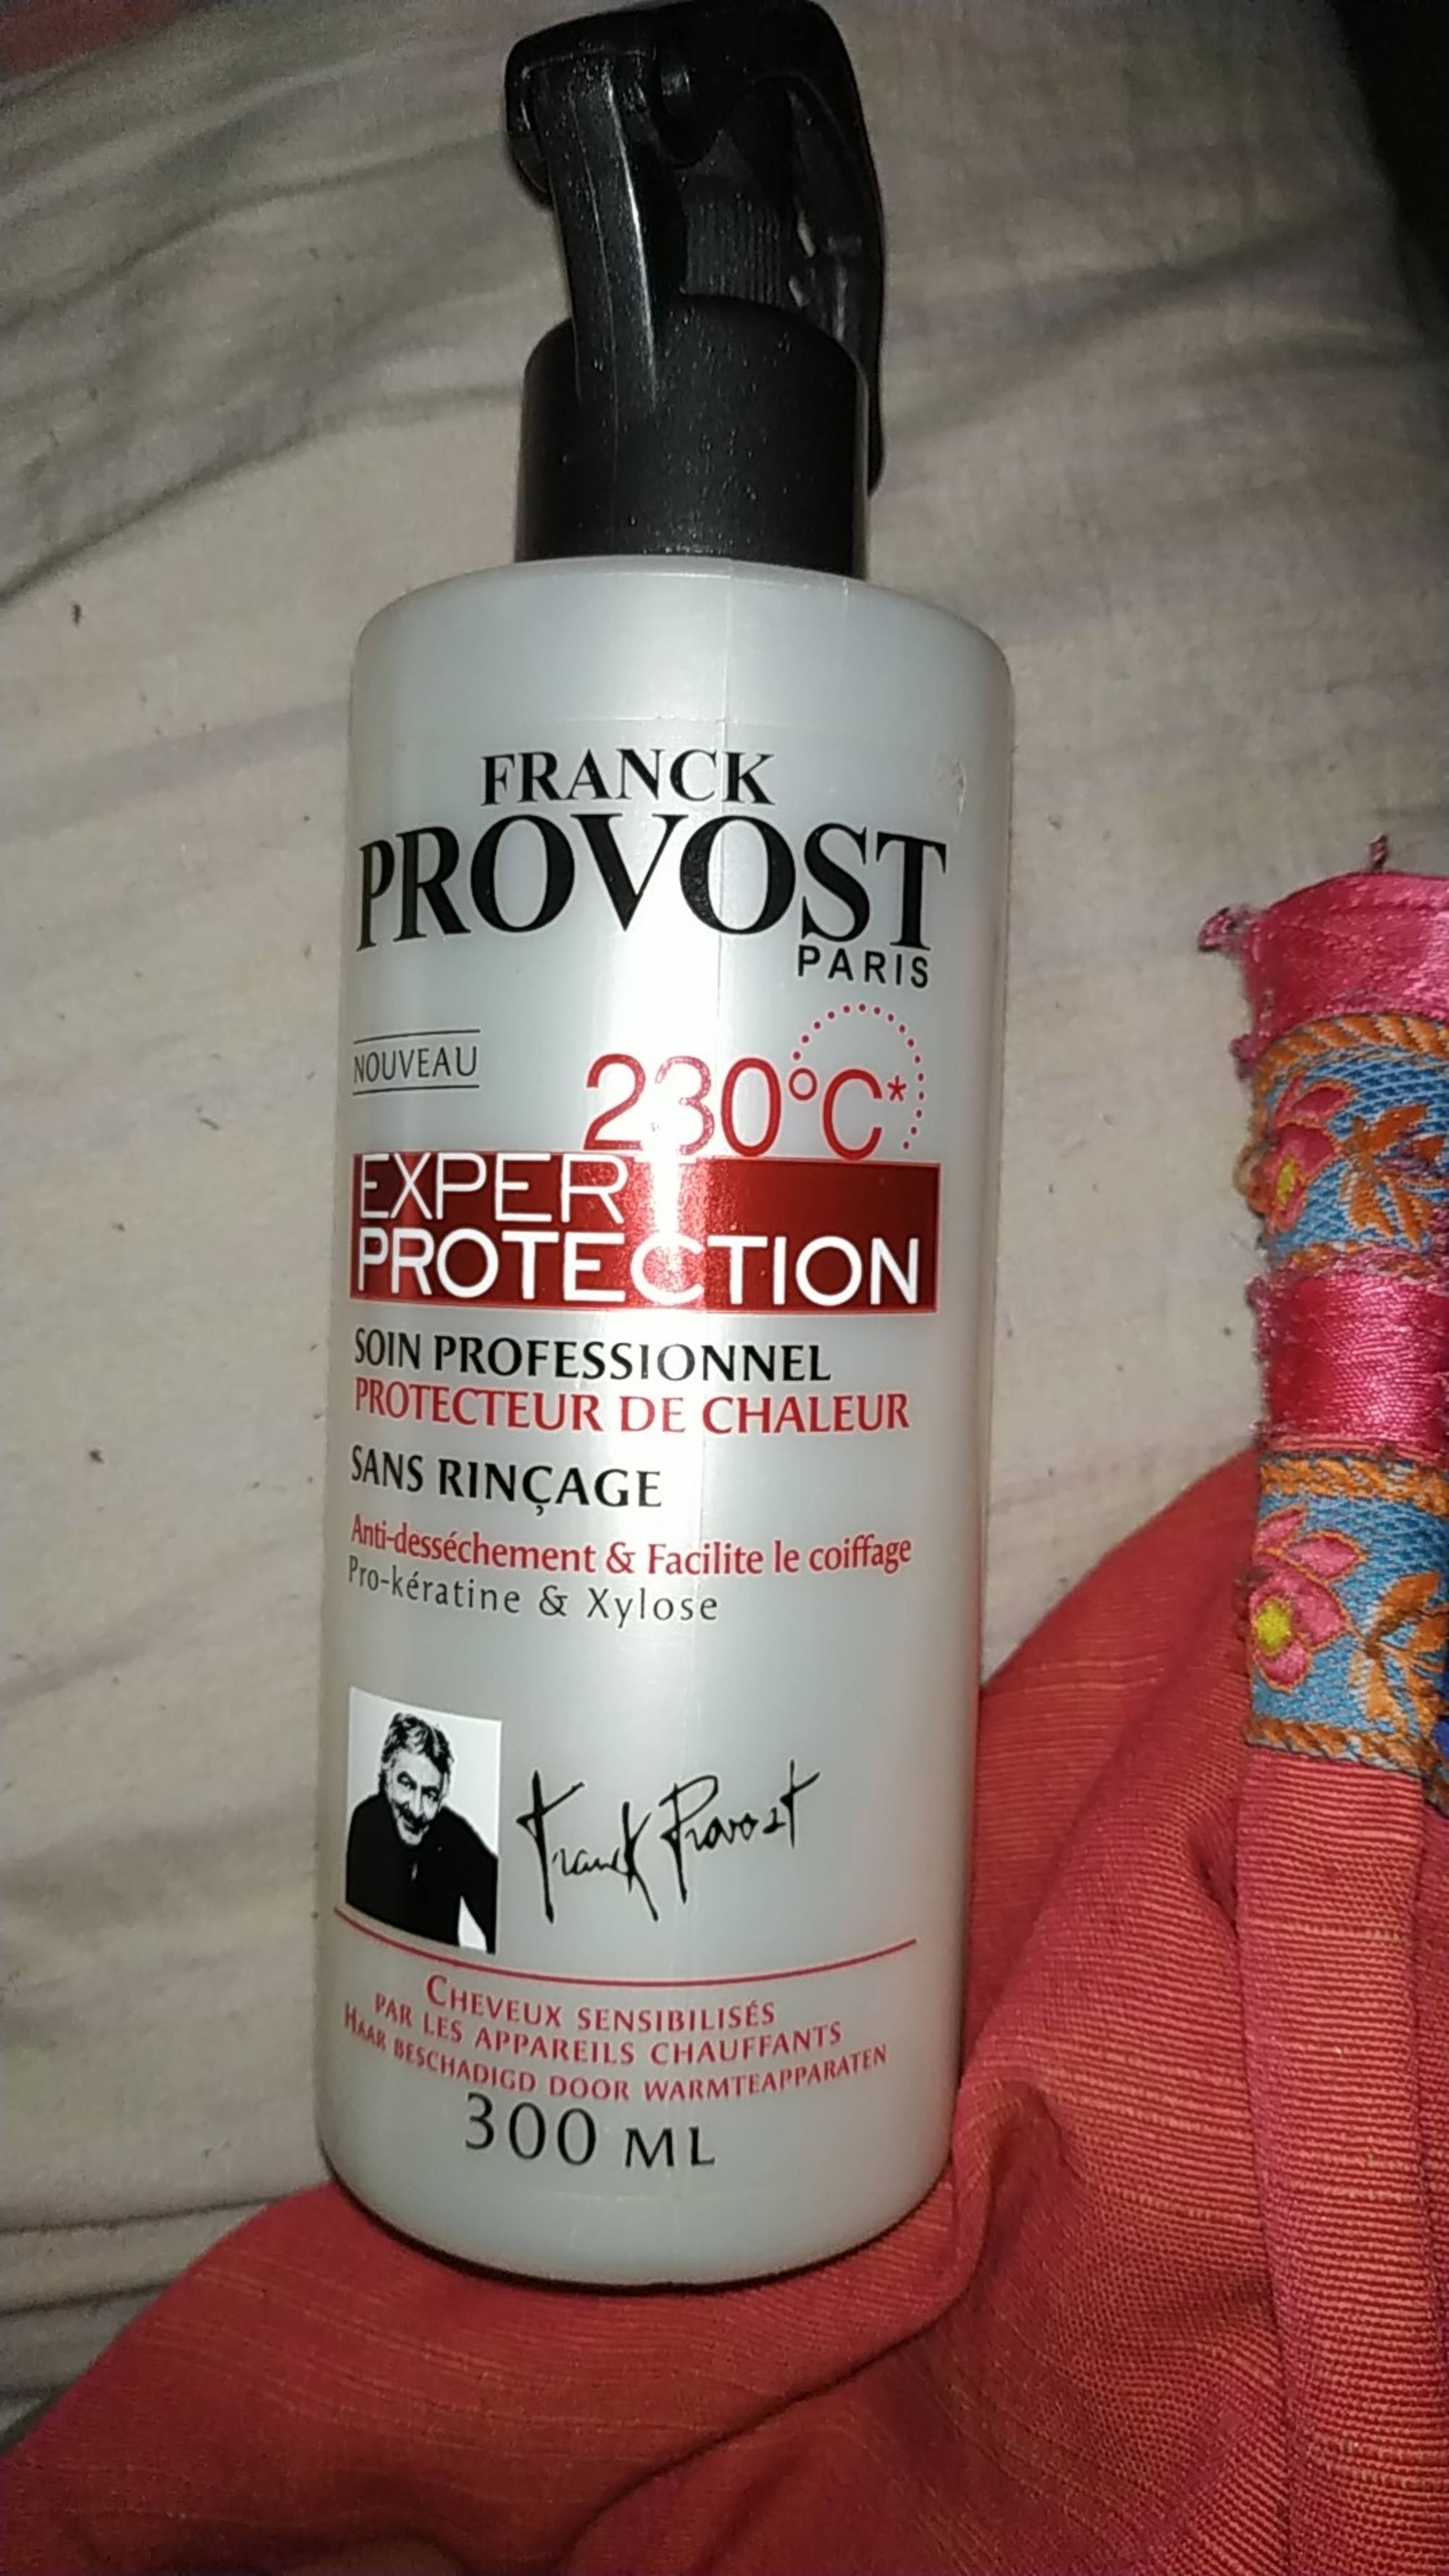 FRANCK PROVOST - Expert protection 230° - Soin professionel Protecteur de chaleur